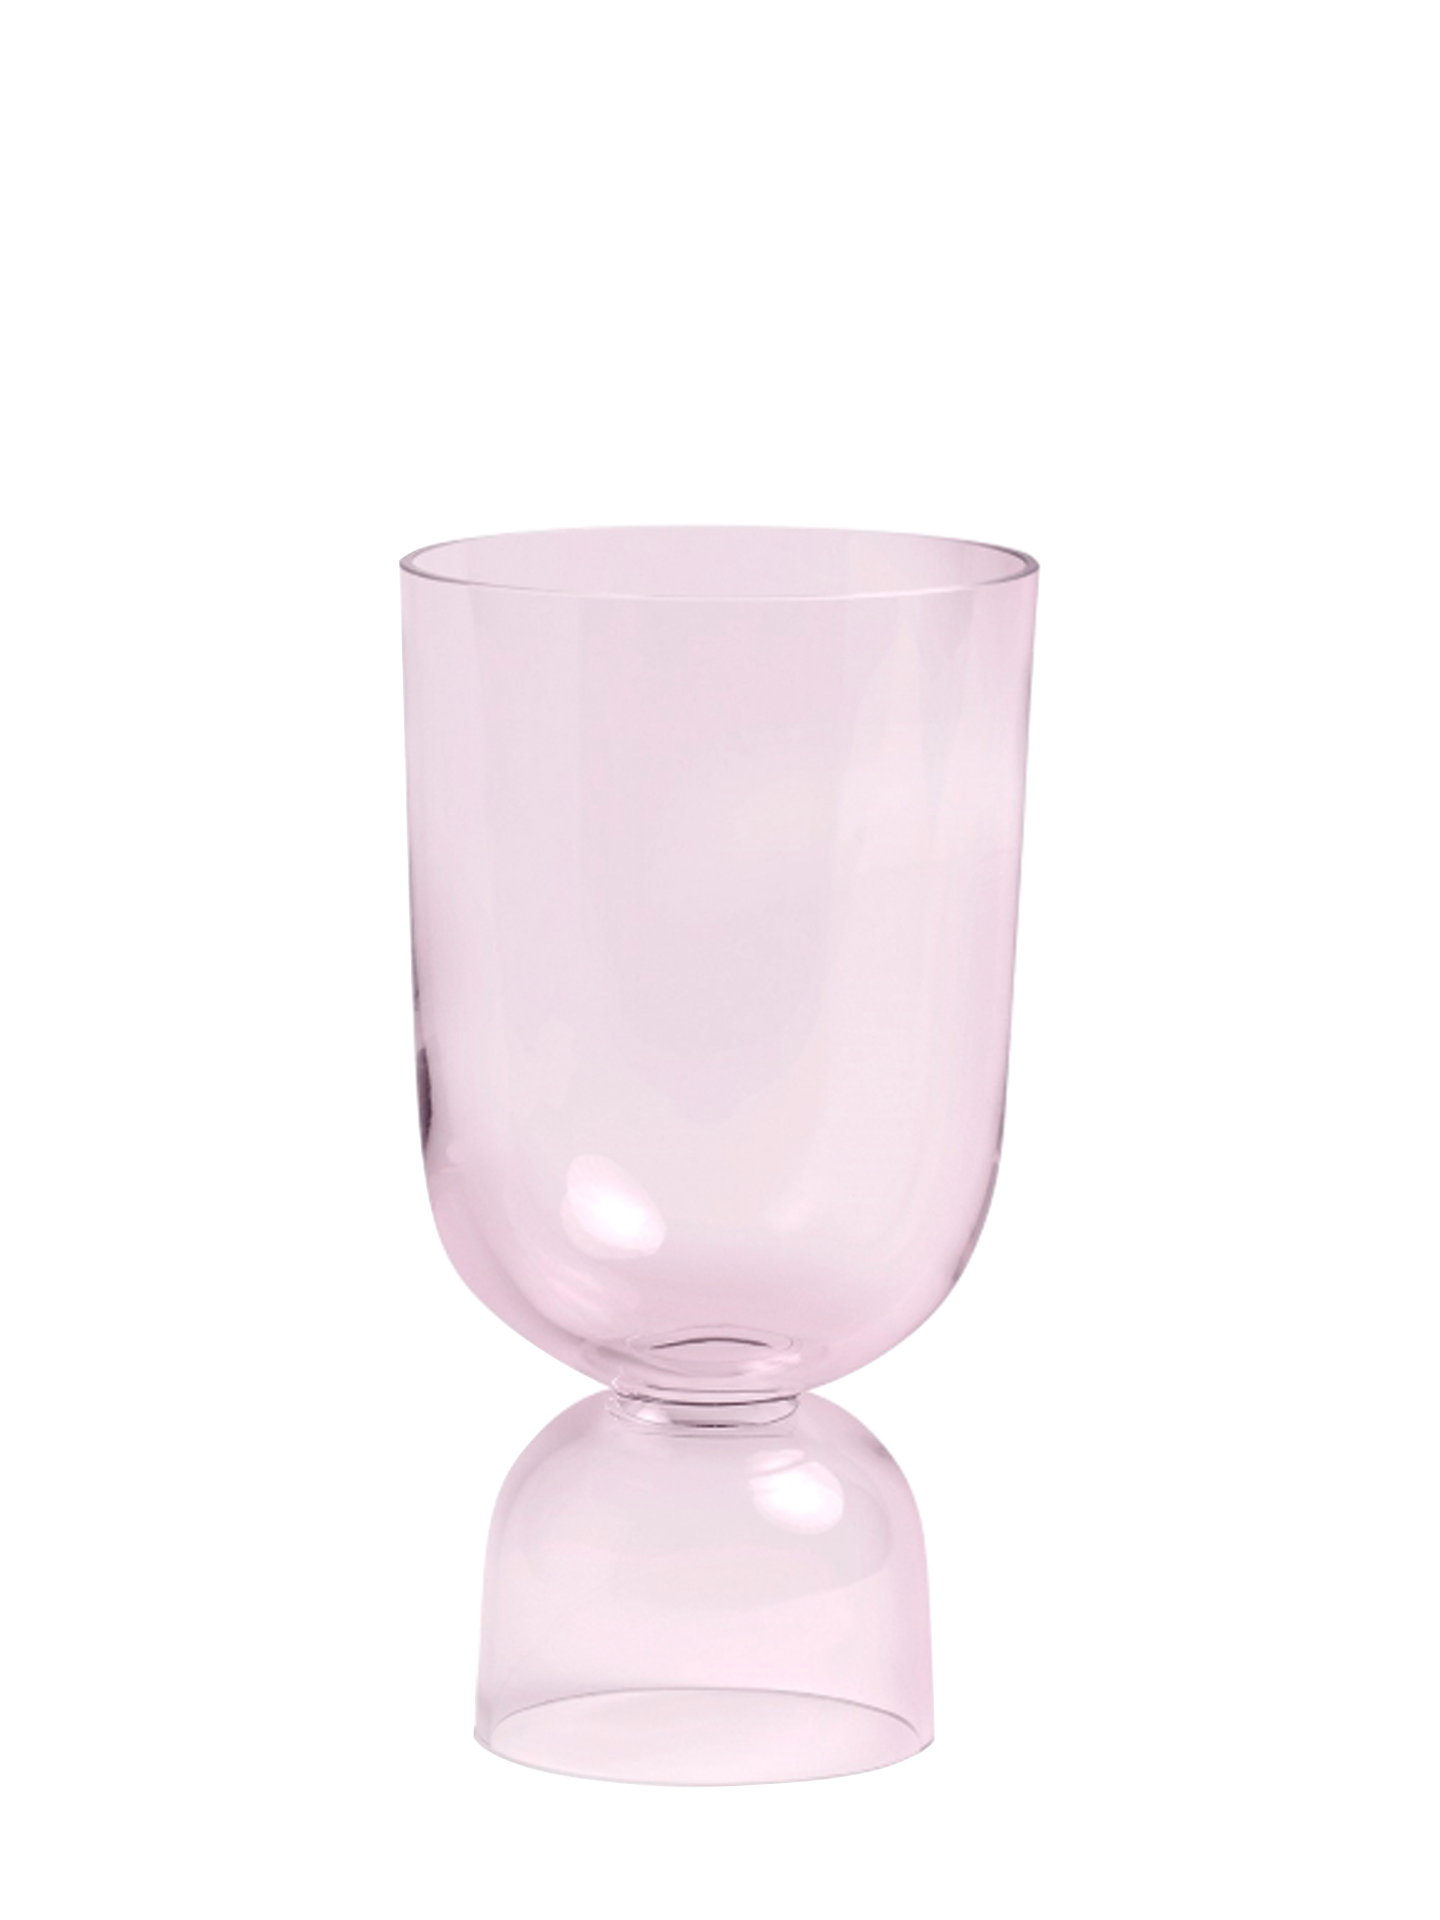 Bottoms Up Vase Soft Pink, S